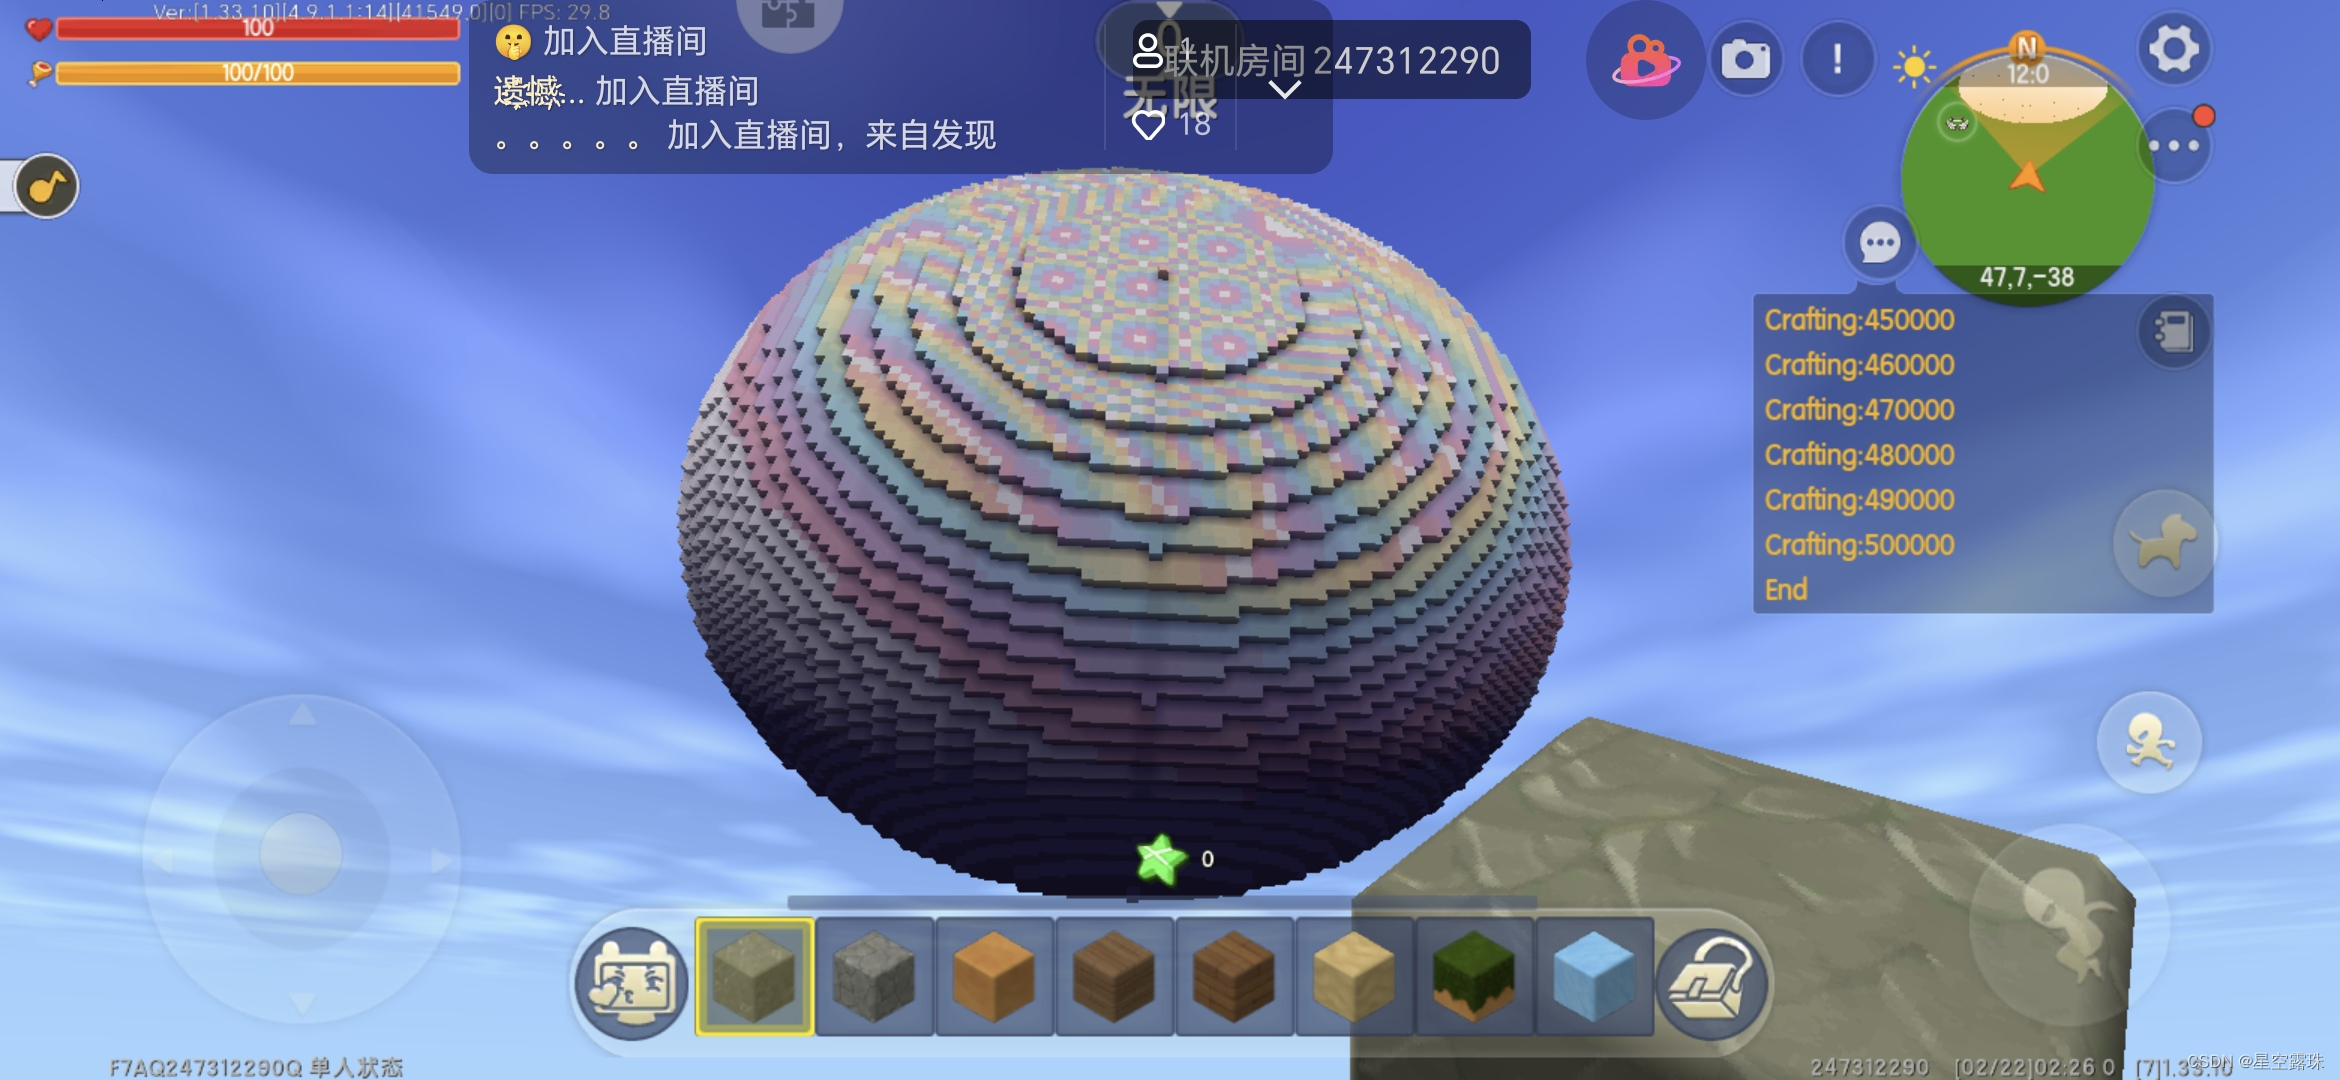 迷你世界之建筑生成球体